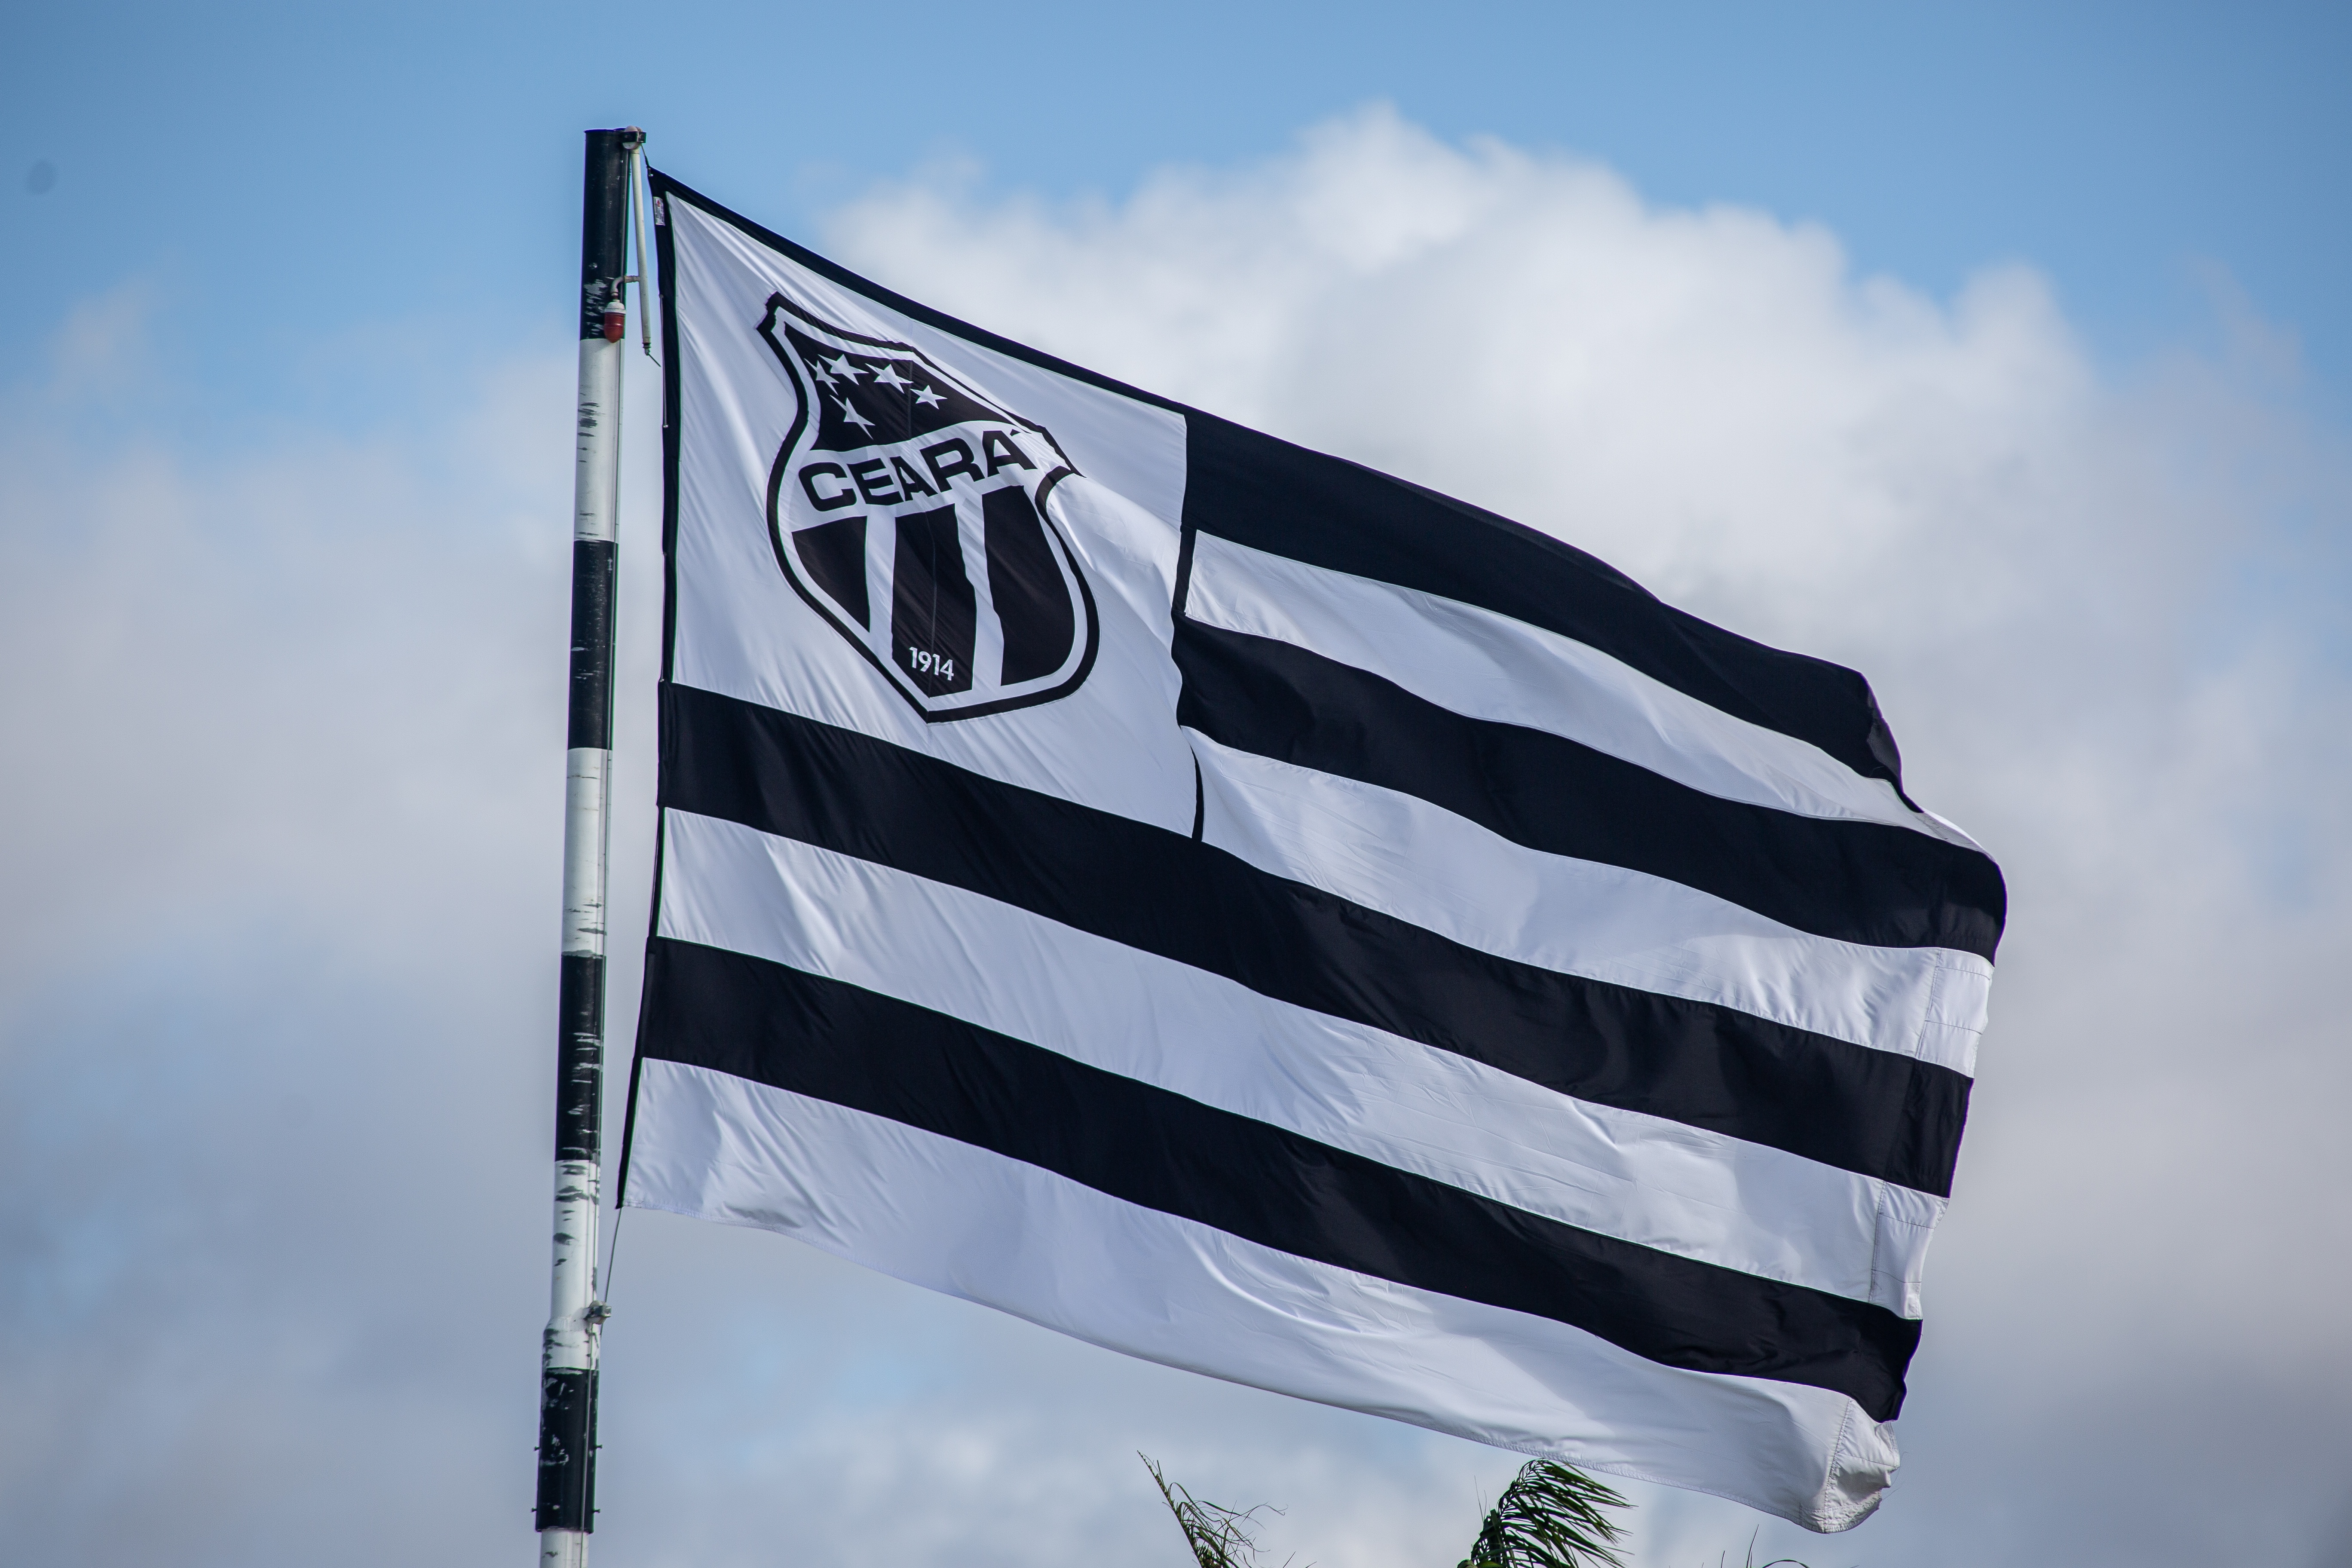 Copa do Nordeste: Bruno Nogueira Prado apita o confronto entre Ceará e ABC/RN